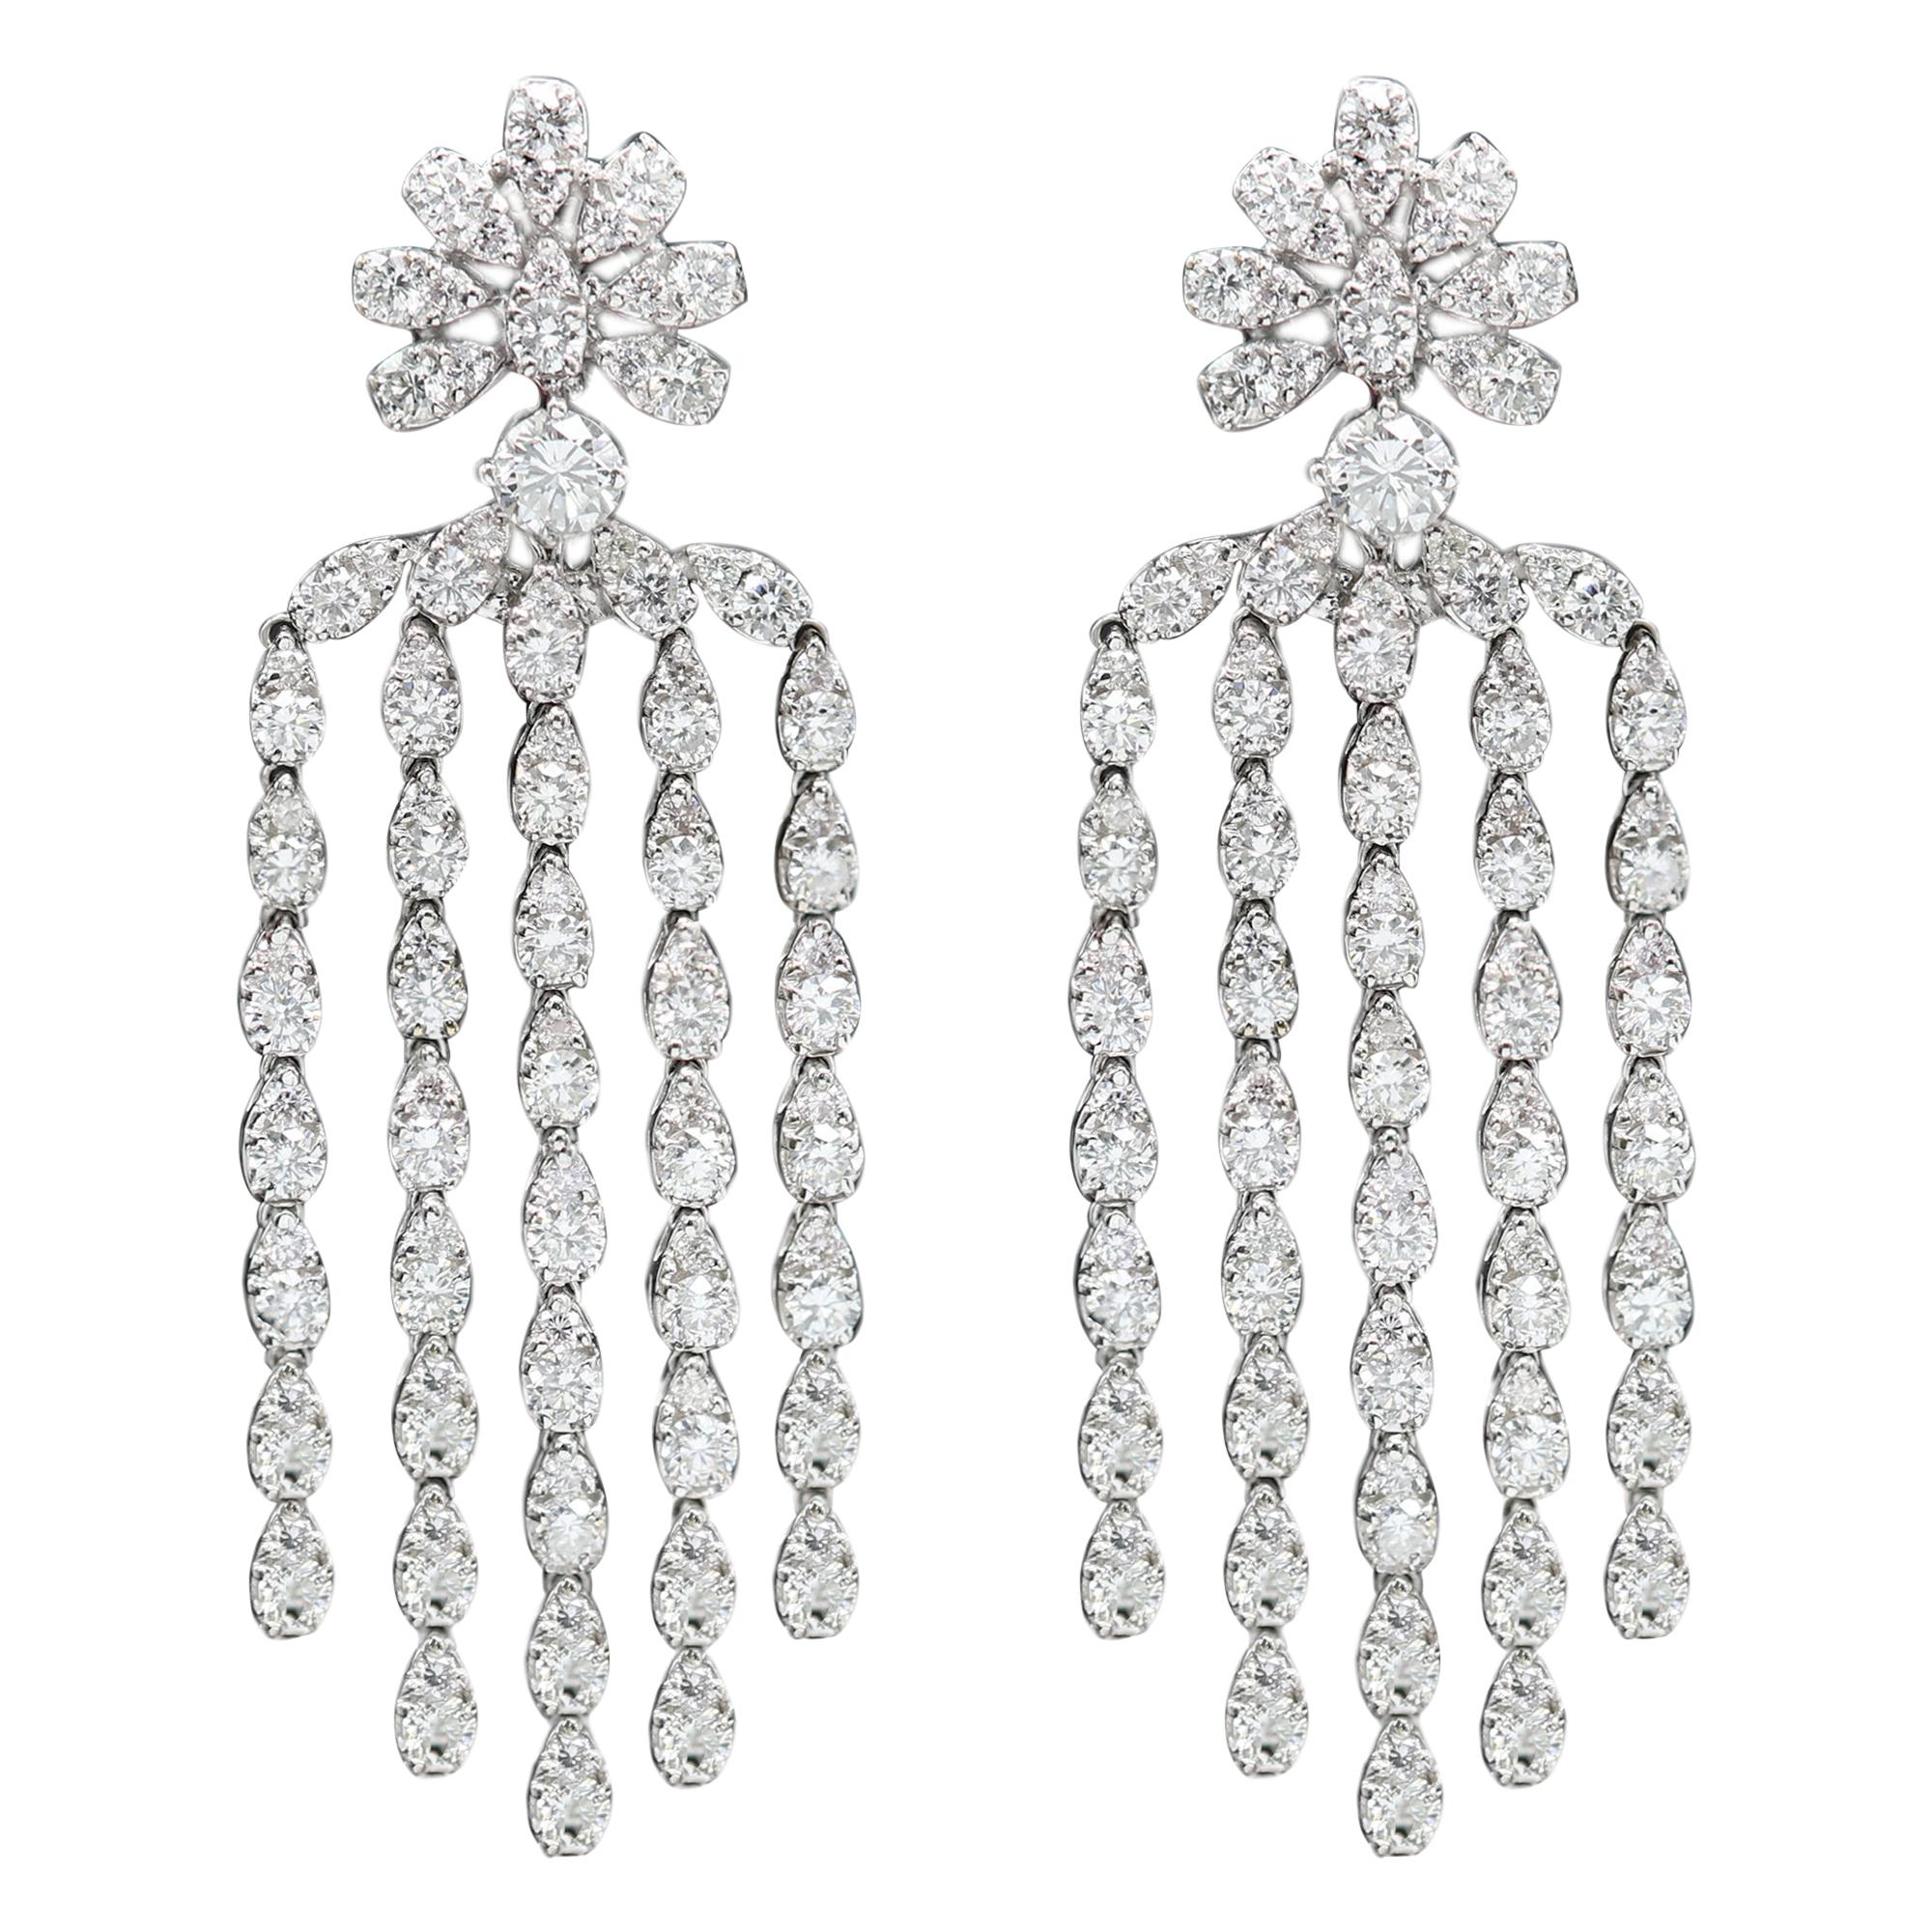 Dangling Diamond Earrings 18 Karat White Gold Chandelier Earrings